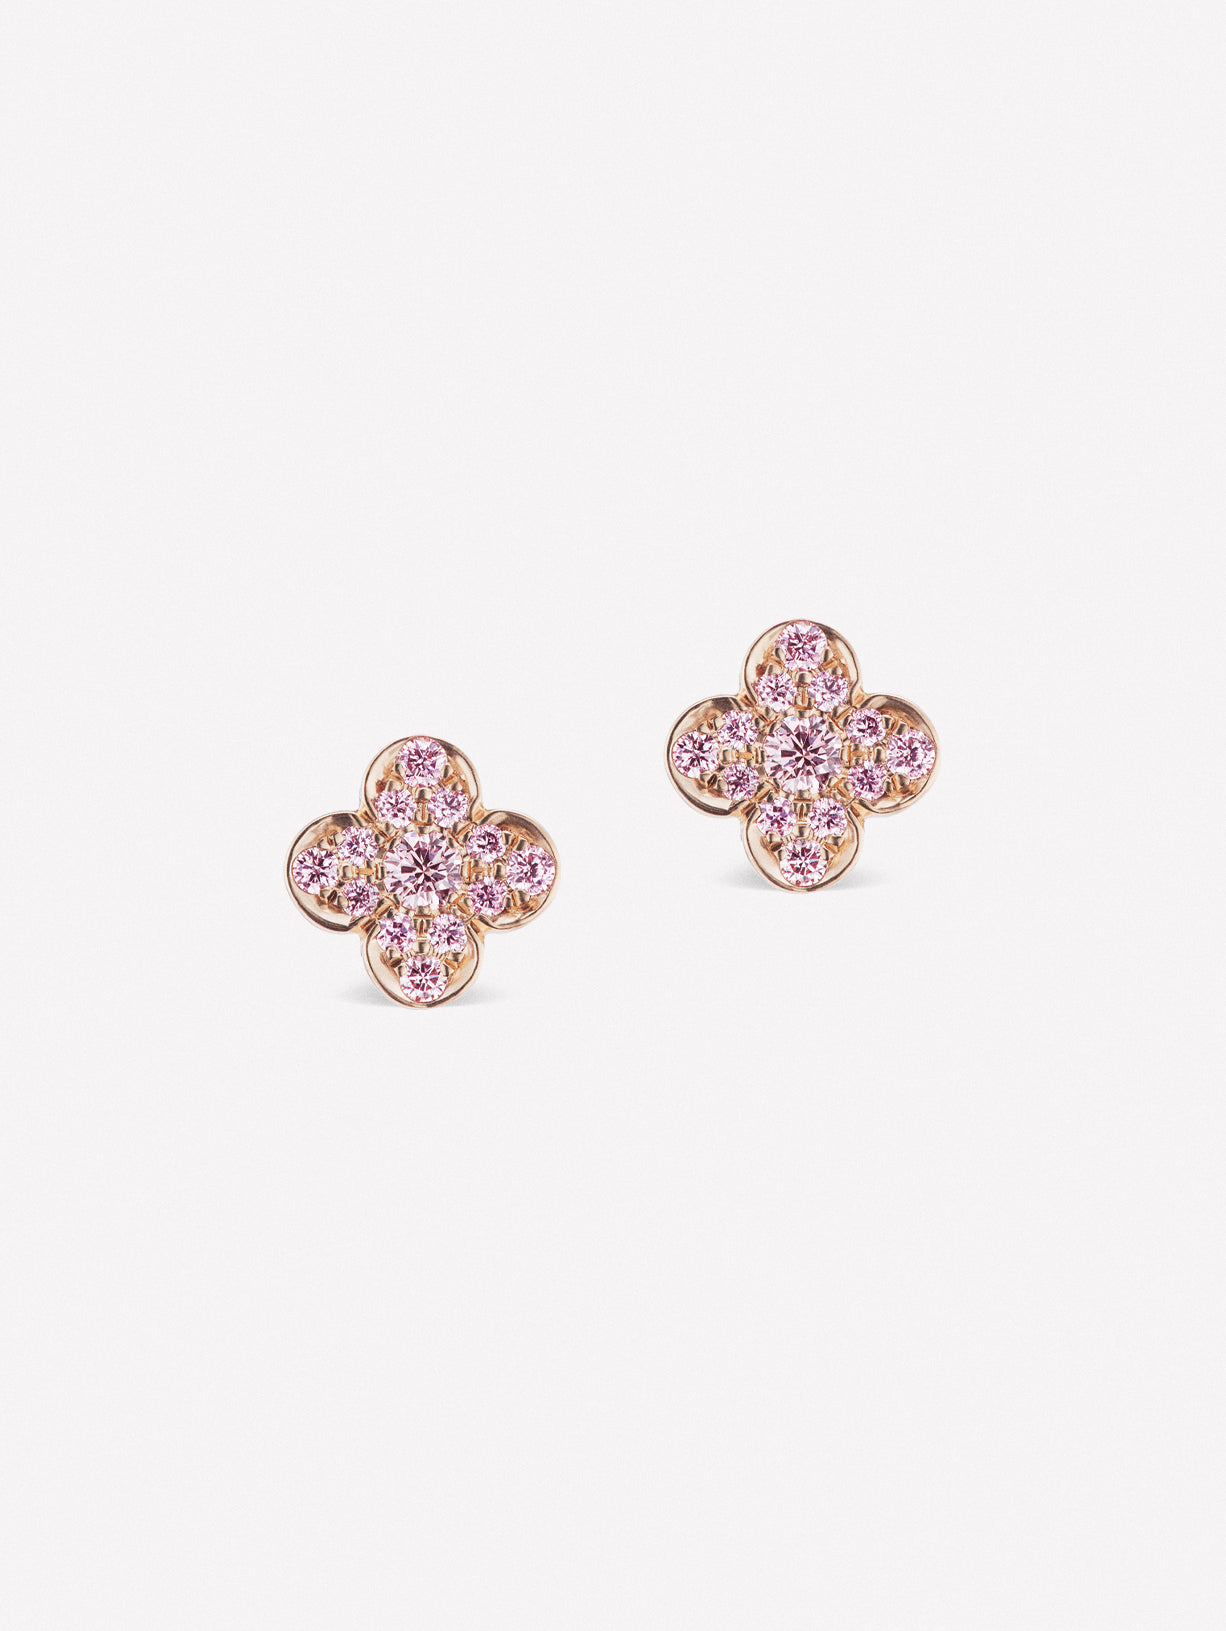 Pink diamond studs from JFINE Azalea collection